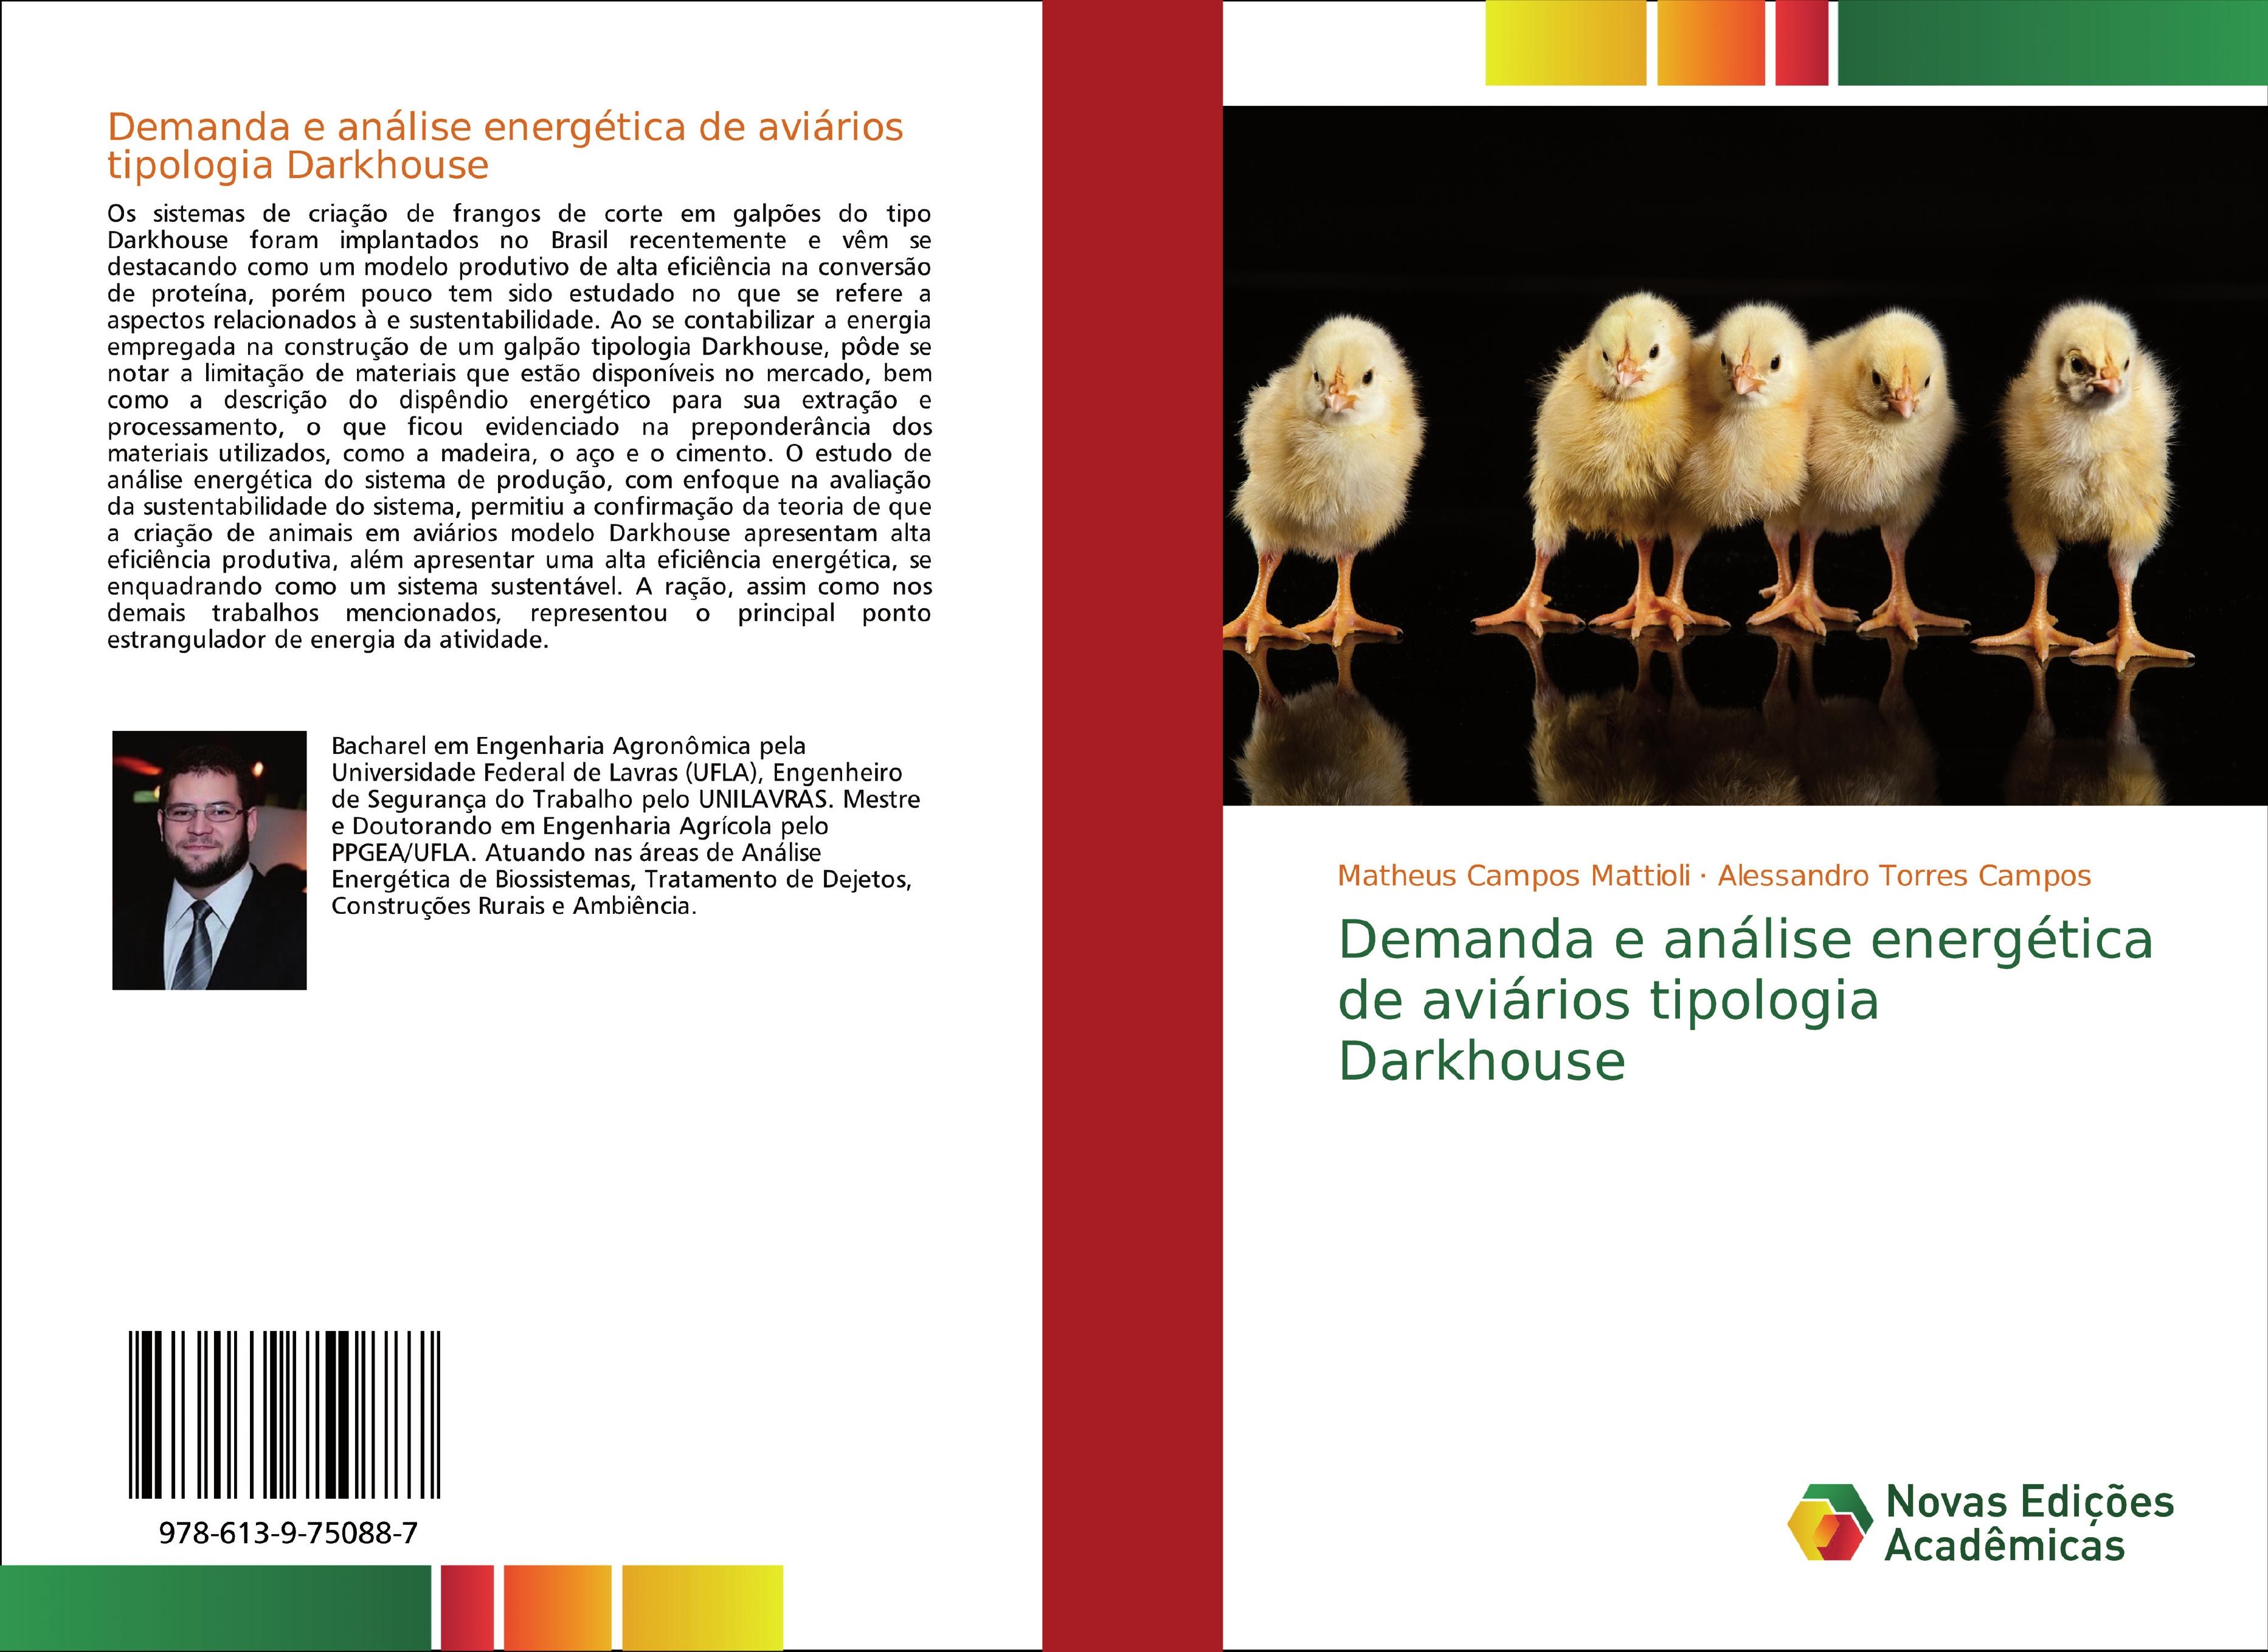 Demanda e análise energética de aviários tipologia Darkhouse - Matheus Campos Mattioli Alessandro Torres Campos